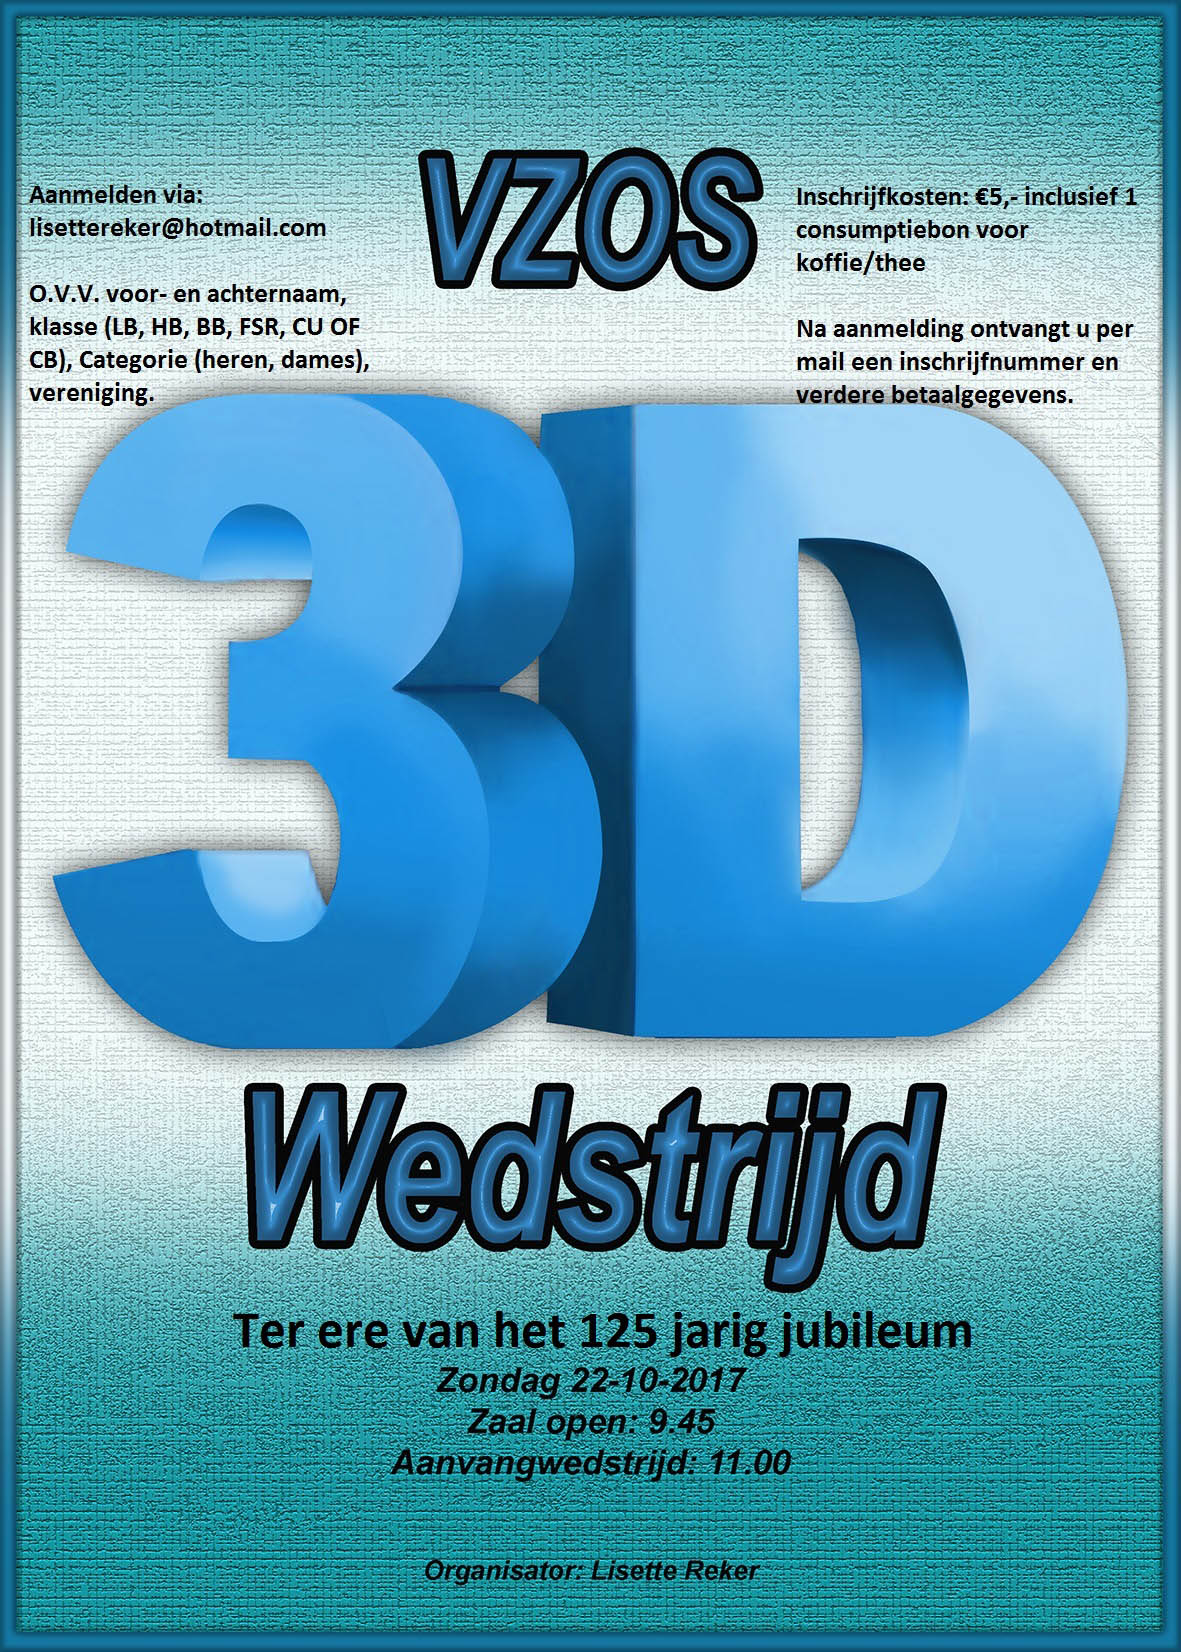 VZOS 3D Wedstrijd @ VZOS